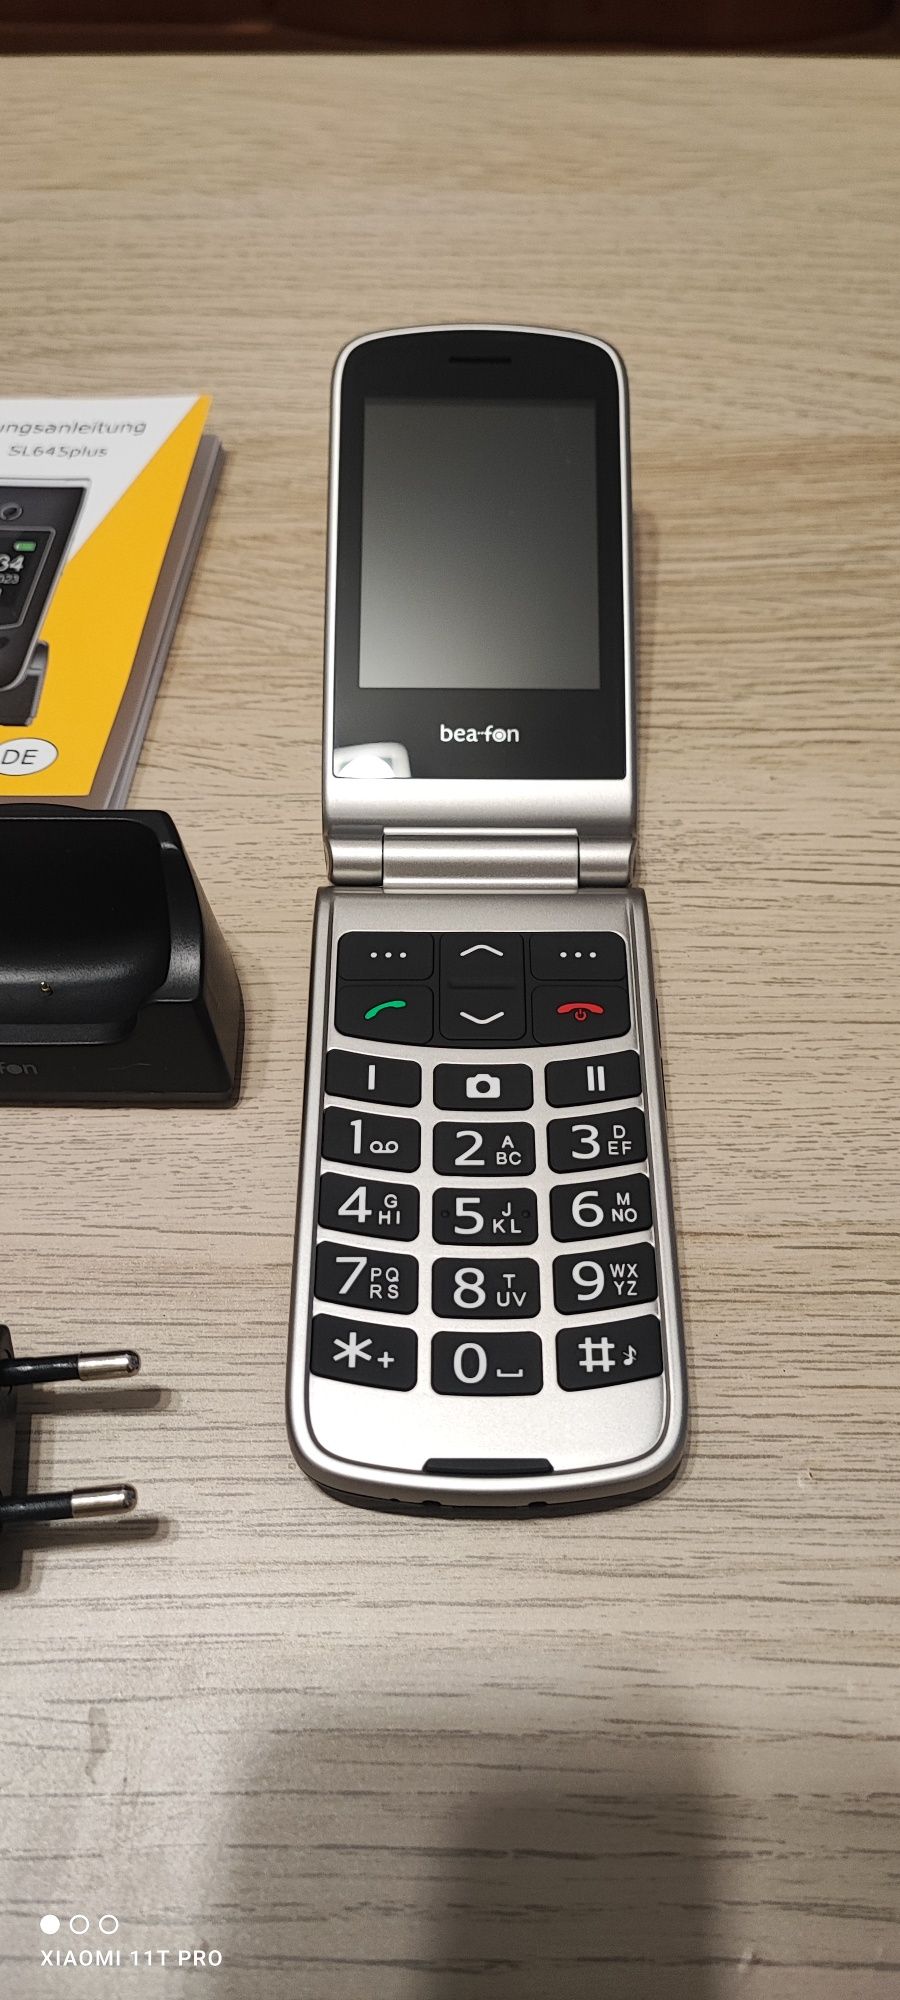 Telefon z klapką duże klawisze bea-fon